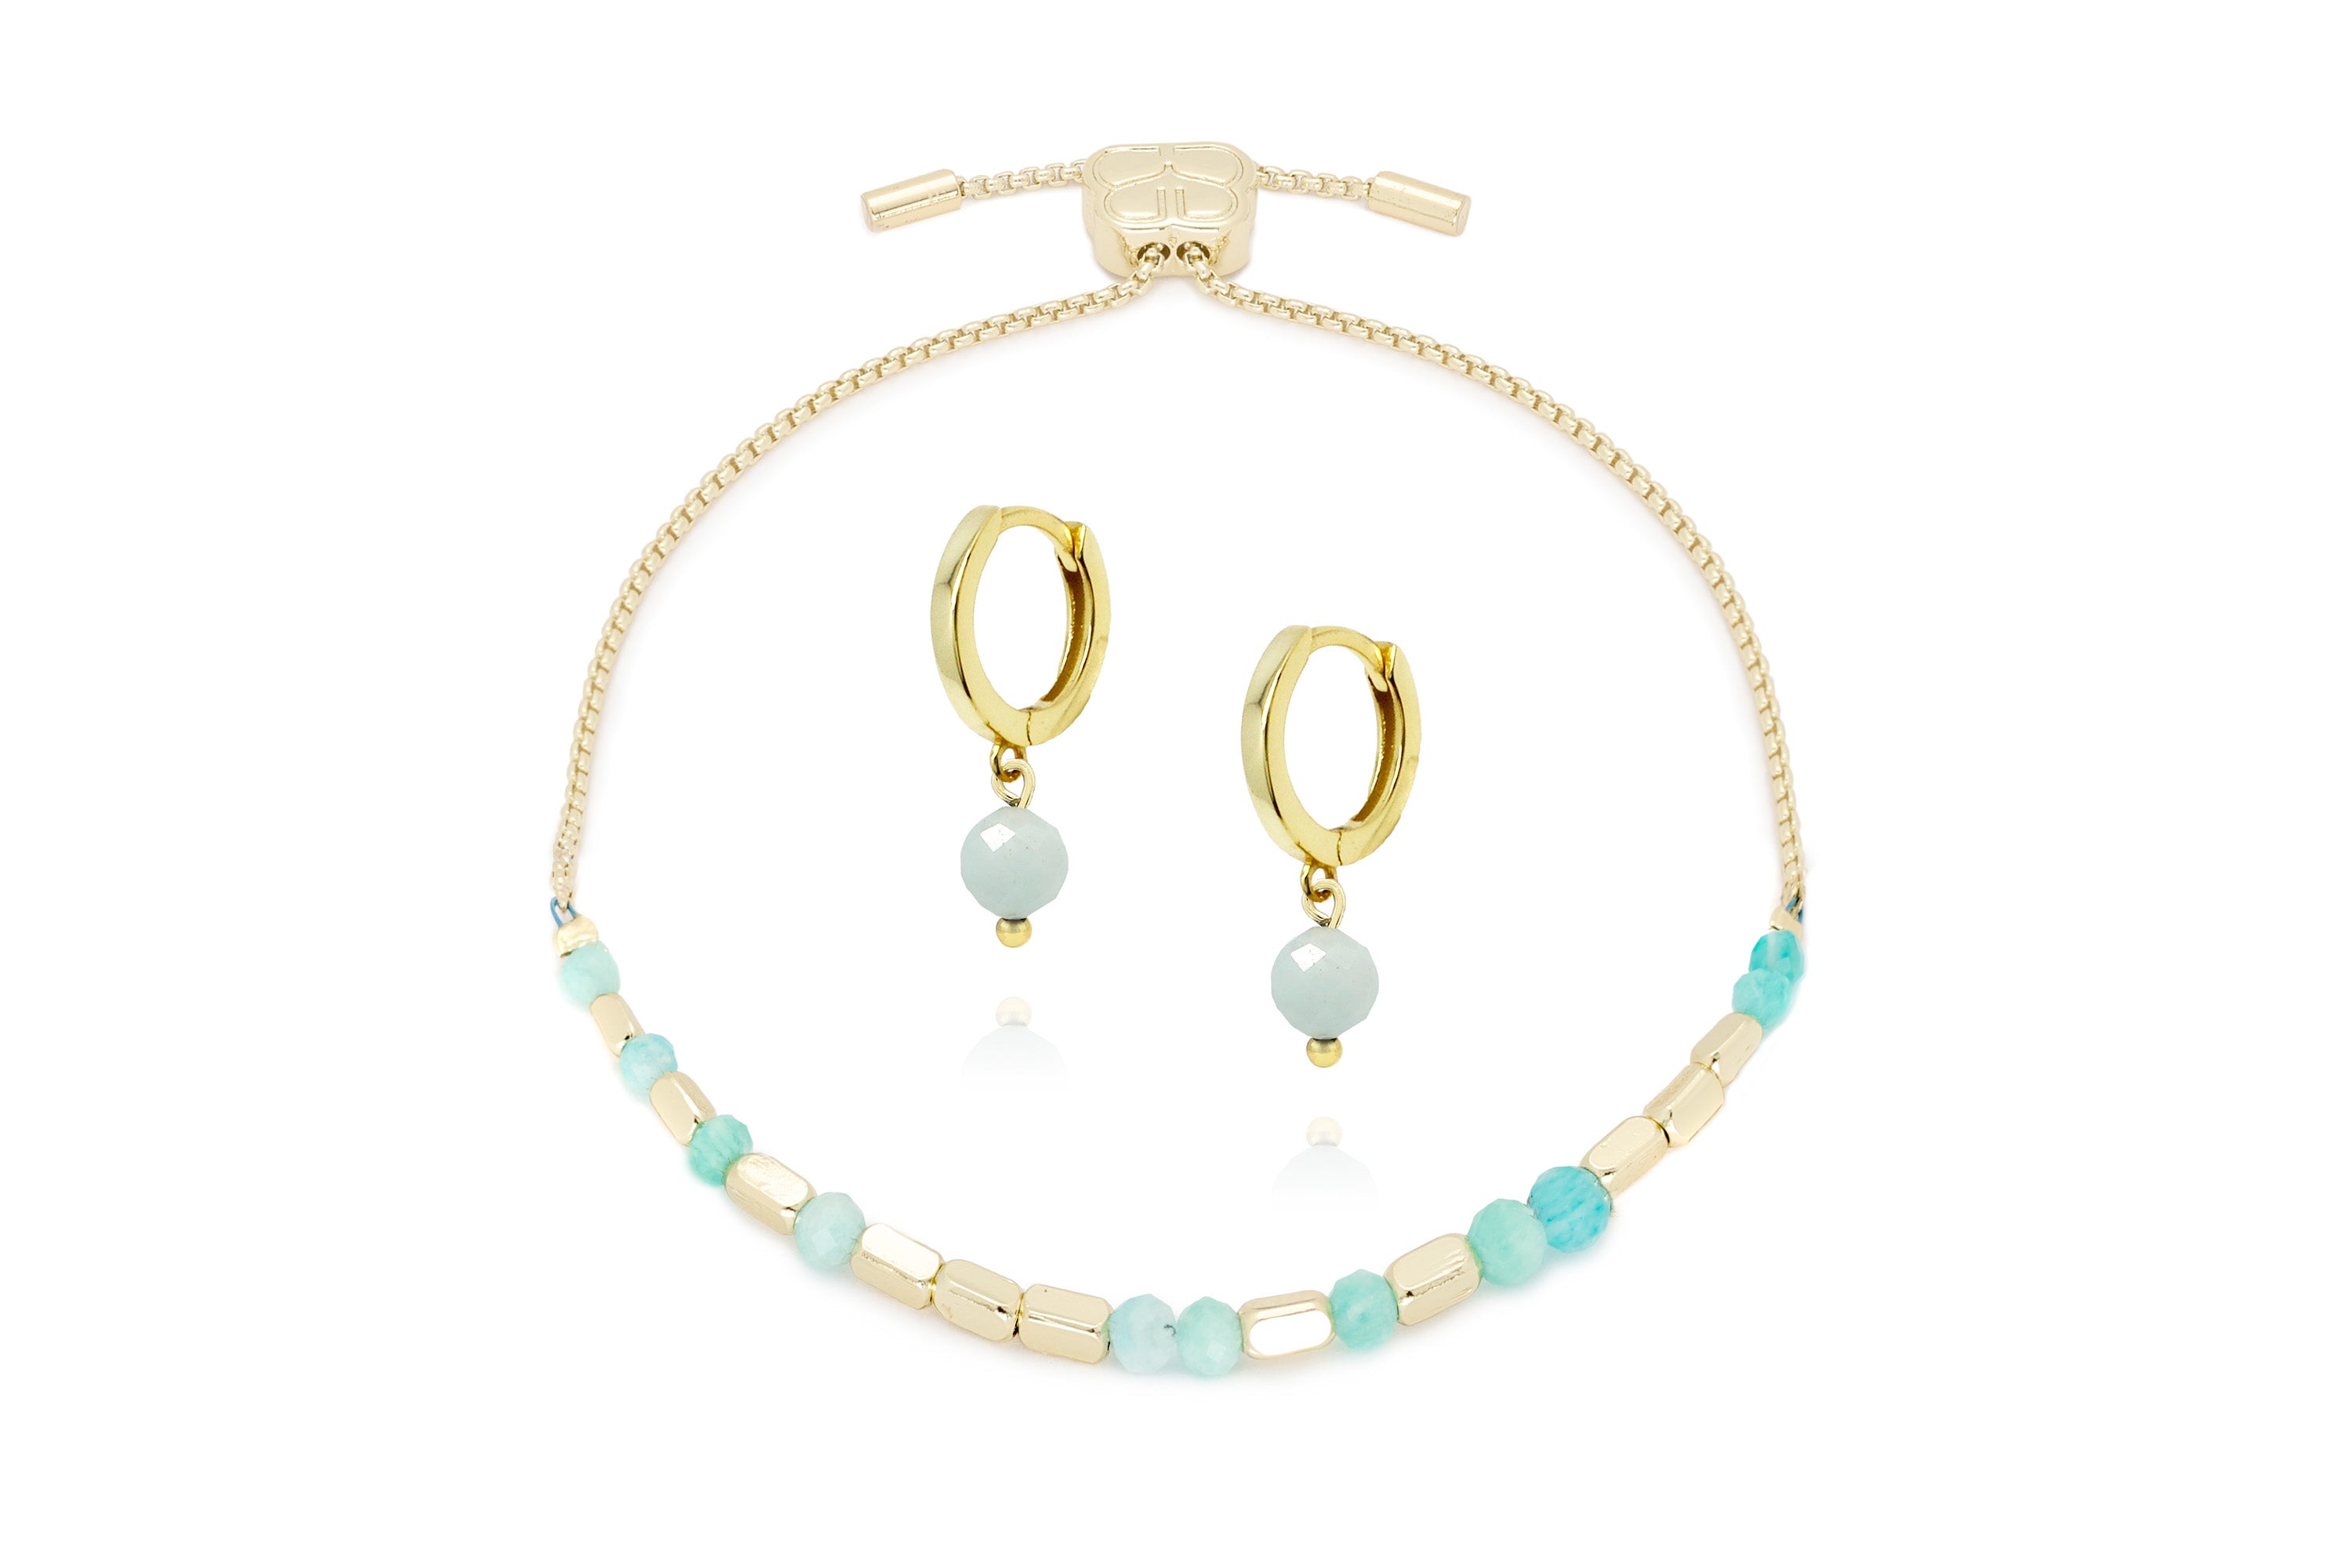 Morse Code Gemstone Gold Bracelet & Earring Gift Set